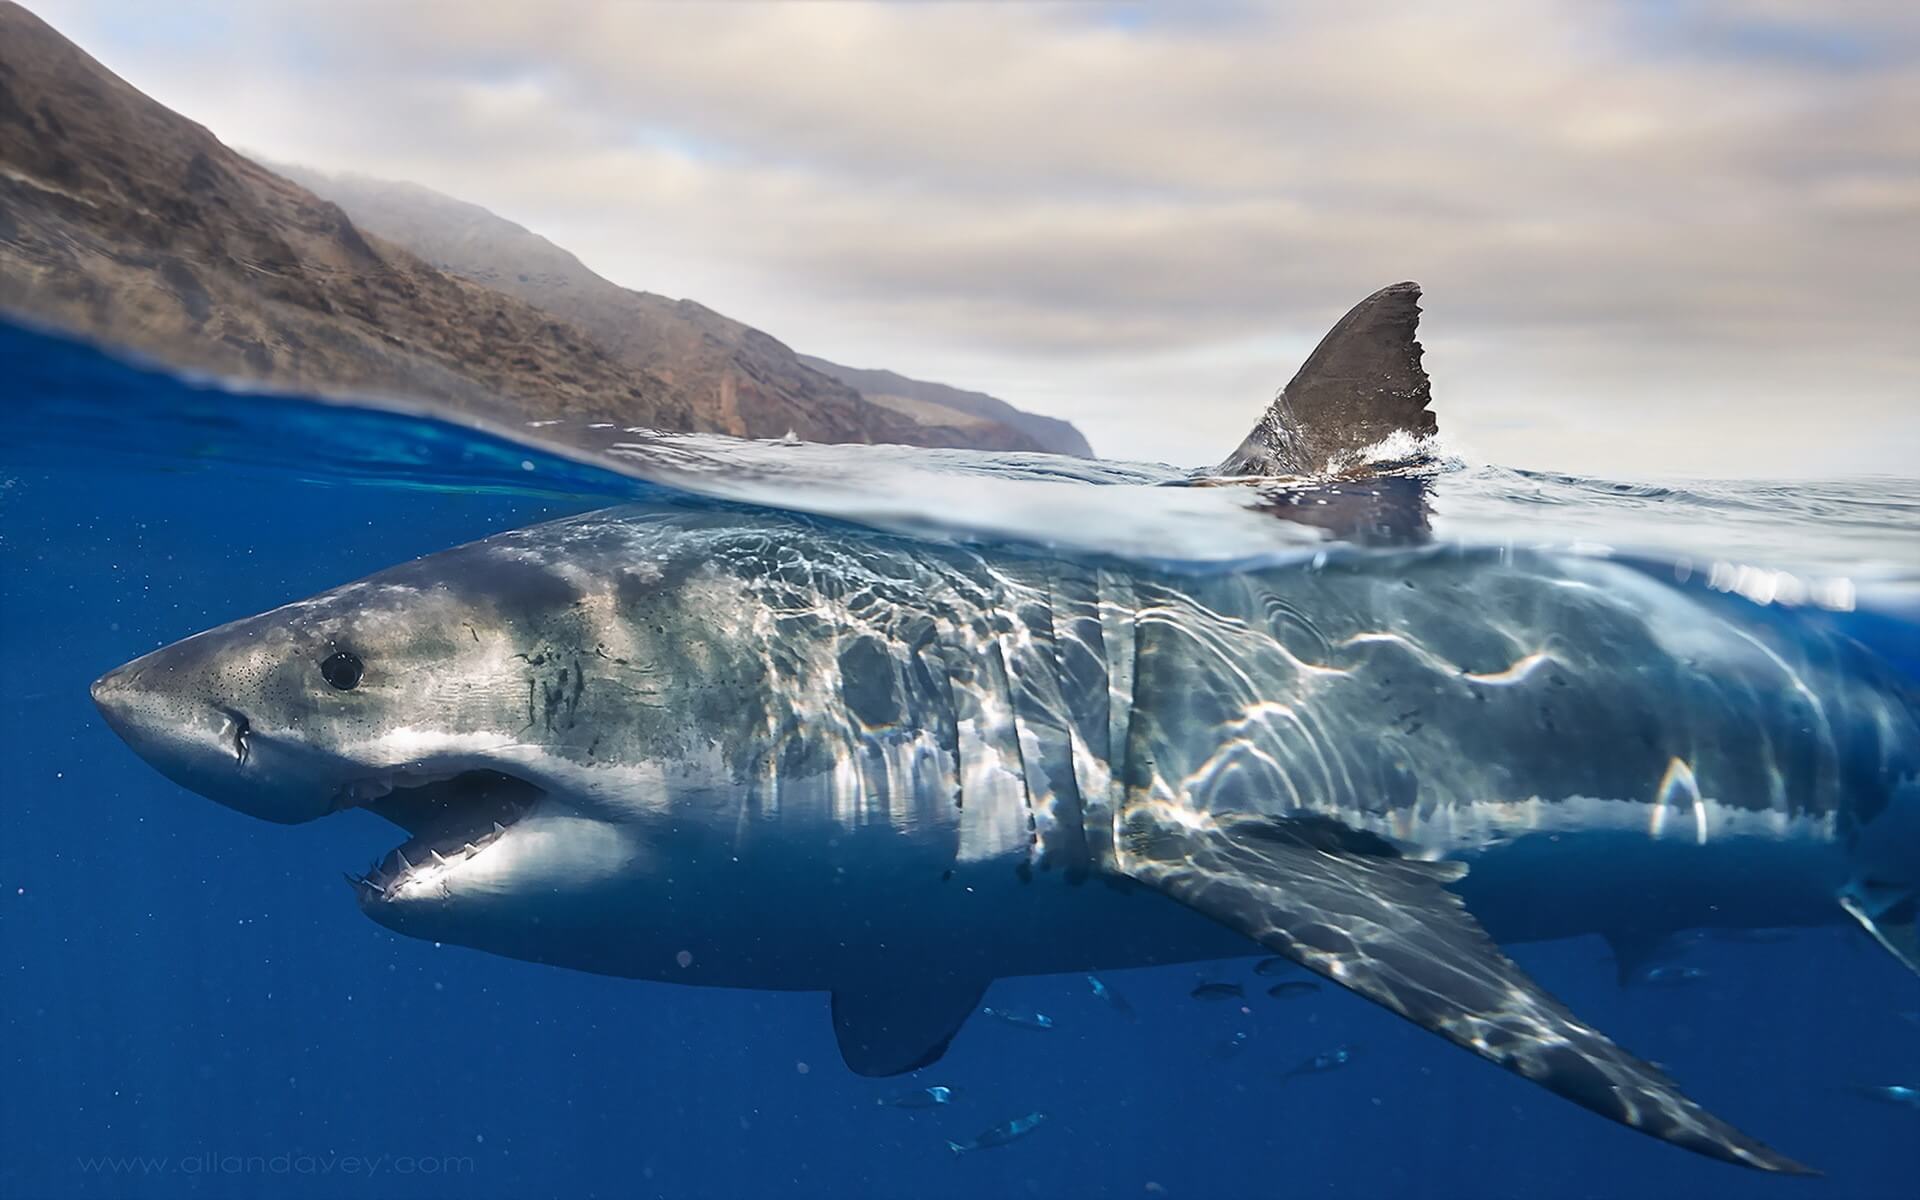 वैज्ञानिकों ने पता लगा है जहाँ वहाँ थे आदमखोर शार्क है कि लोगों को मारने